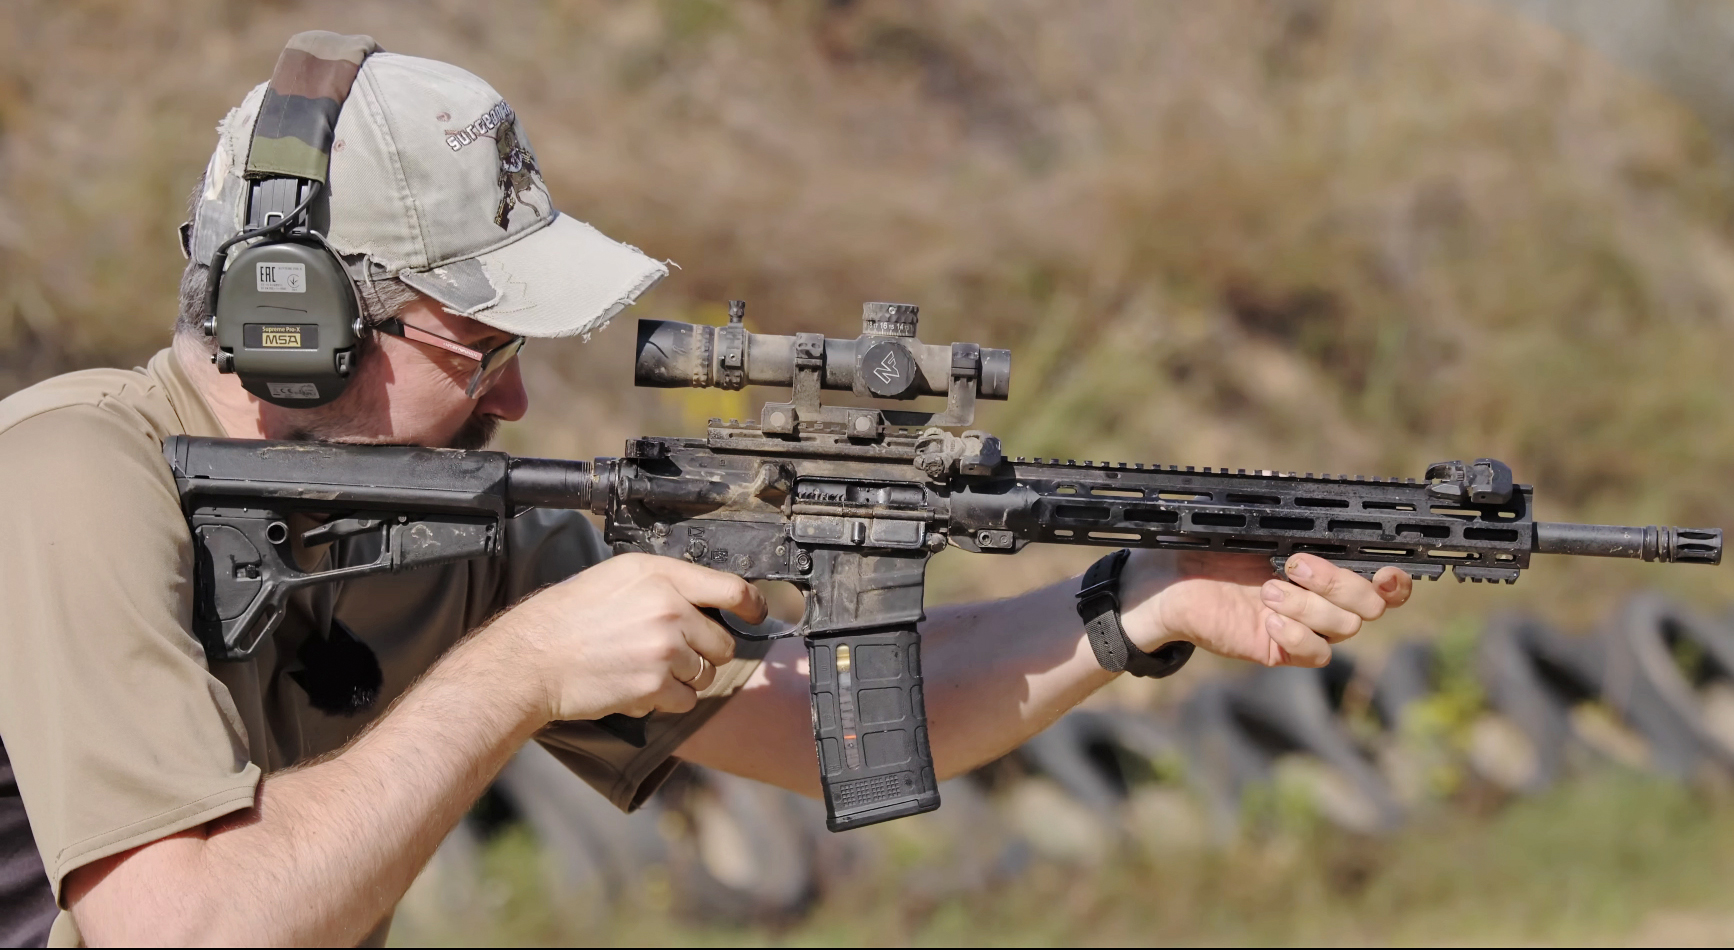 Частые вопросы по AR-15 к оружейному эксперту. Часть 3: Чистка и уход за оружием